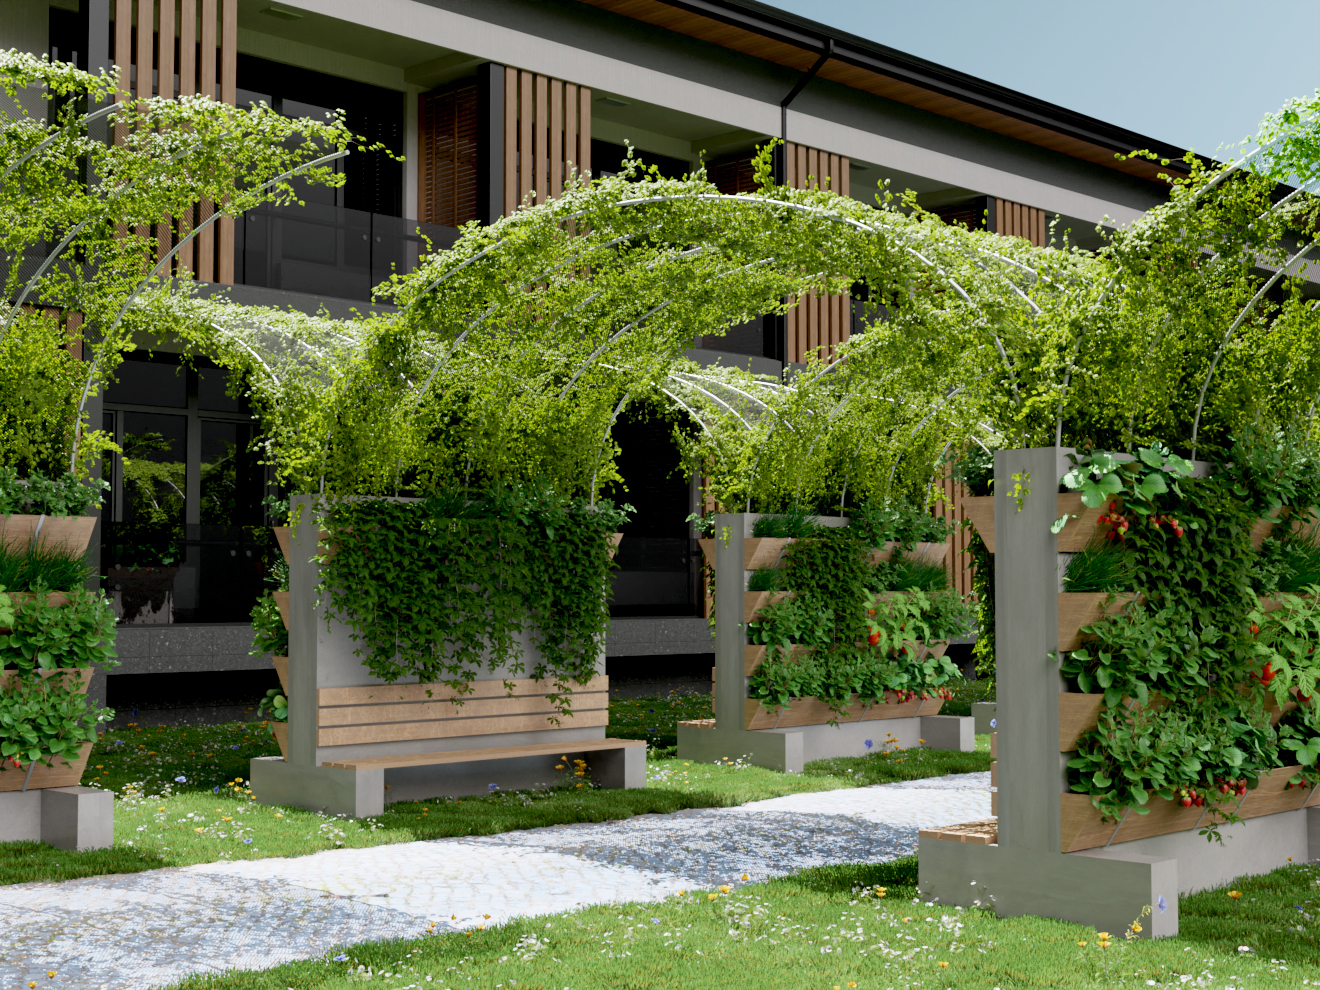 Succession de Murs-Ombrière Végétaux en vis-à-vis pour créer des arches d'ombre et de verdure